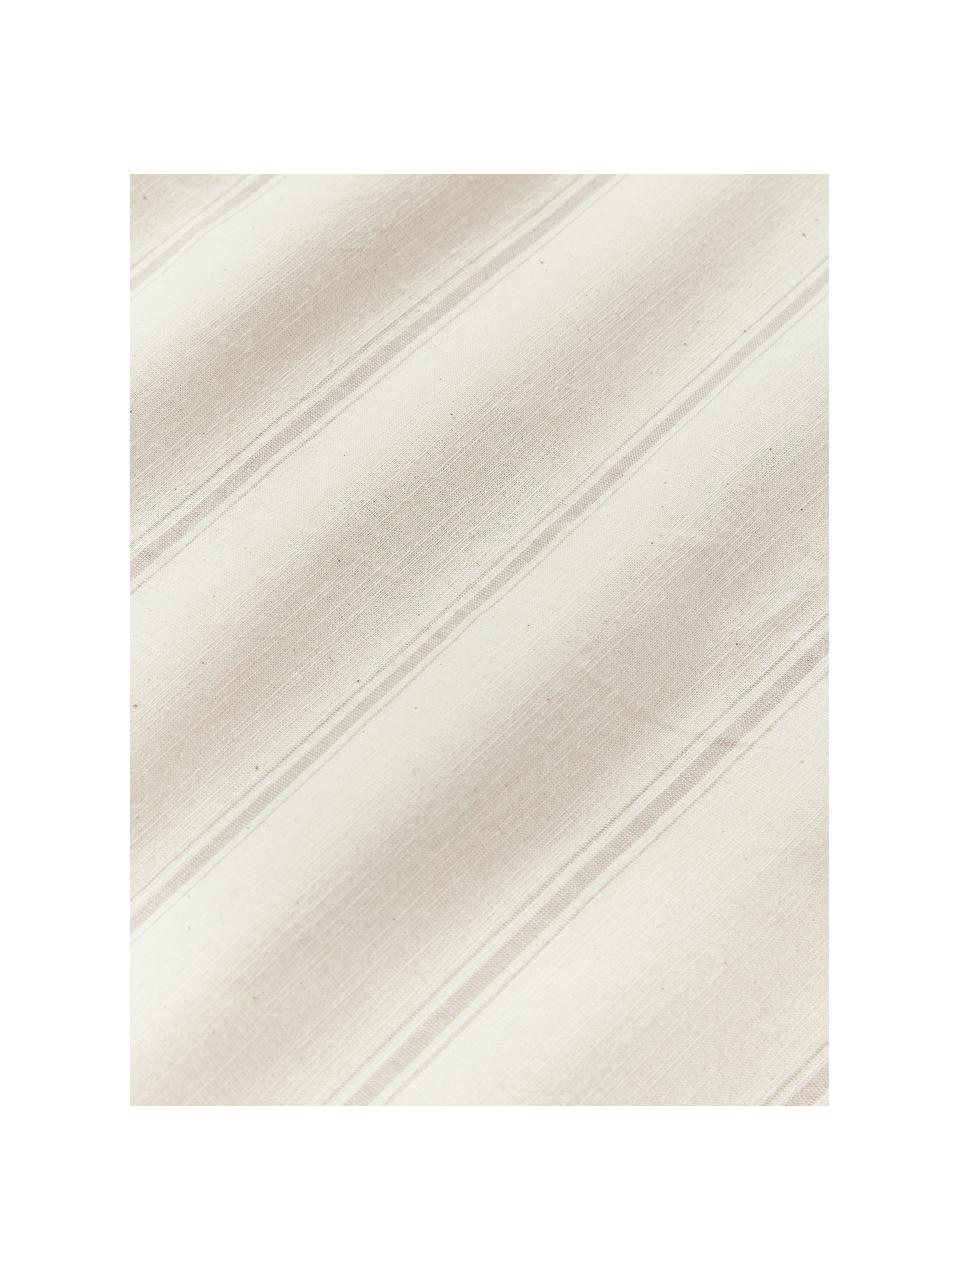 Housse de couette en coton délavé avec rayures Caspian, Beige, blanc cassé, larg. 200 x long. 200 cm